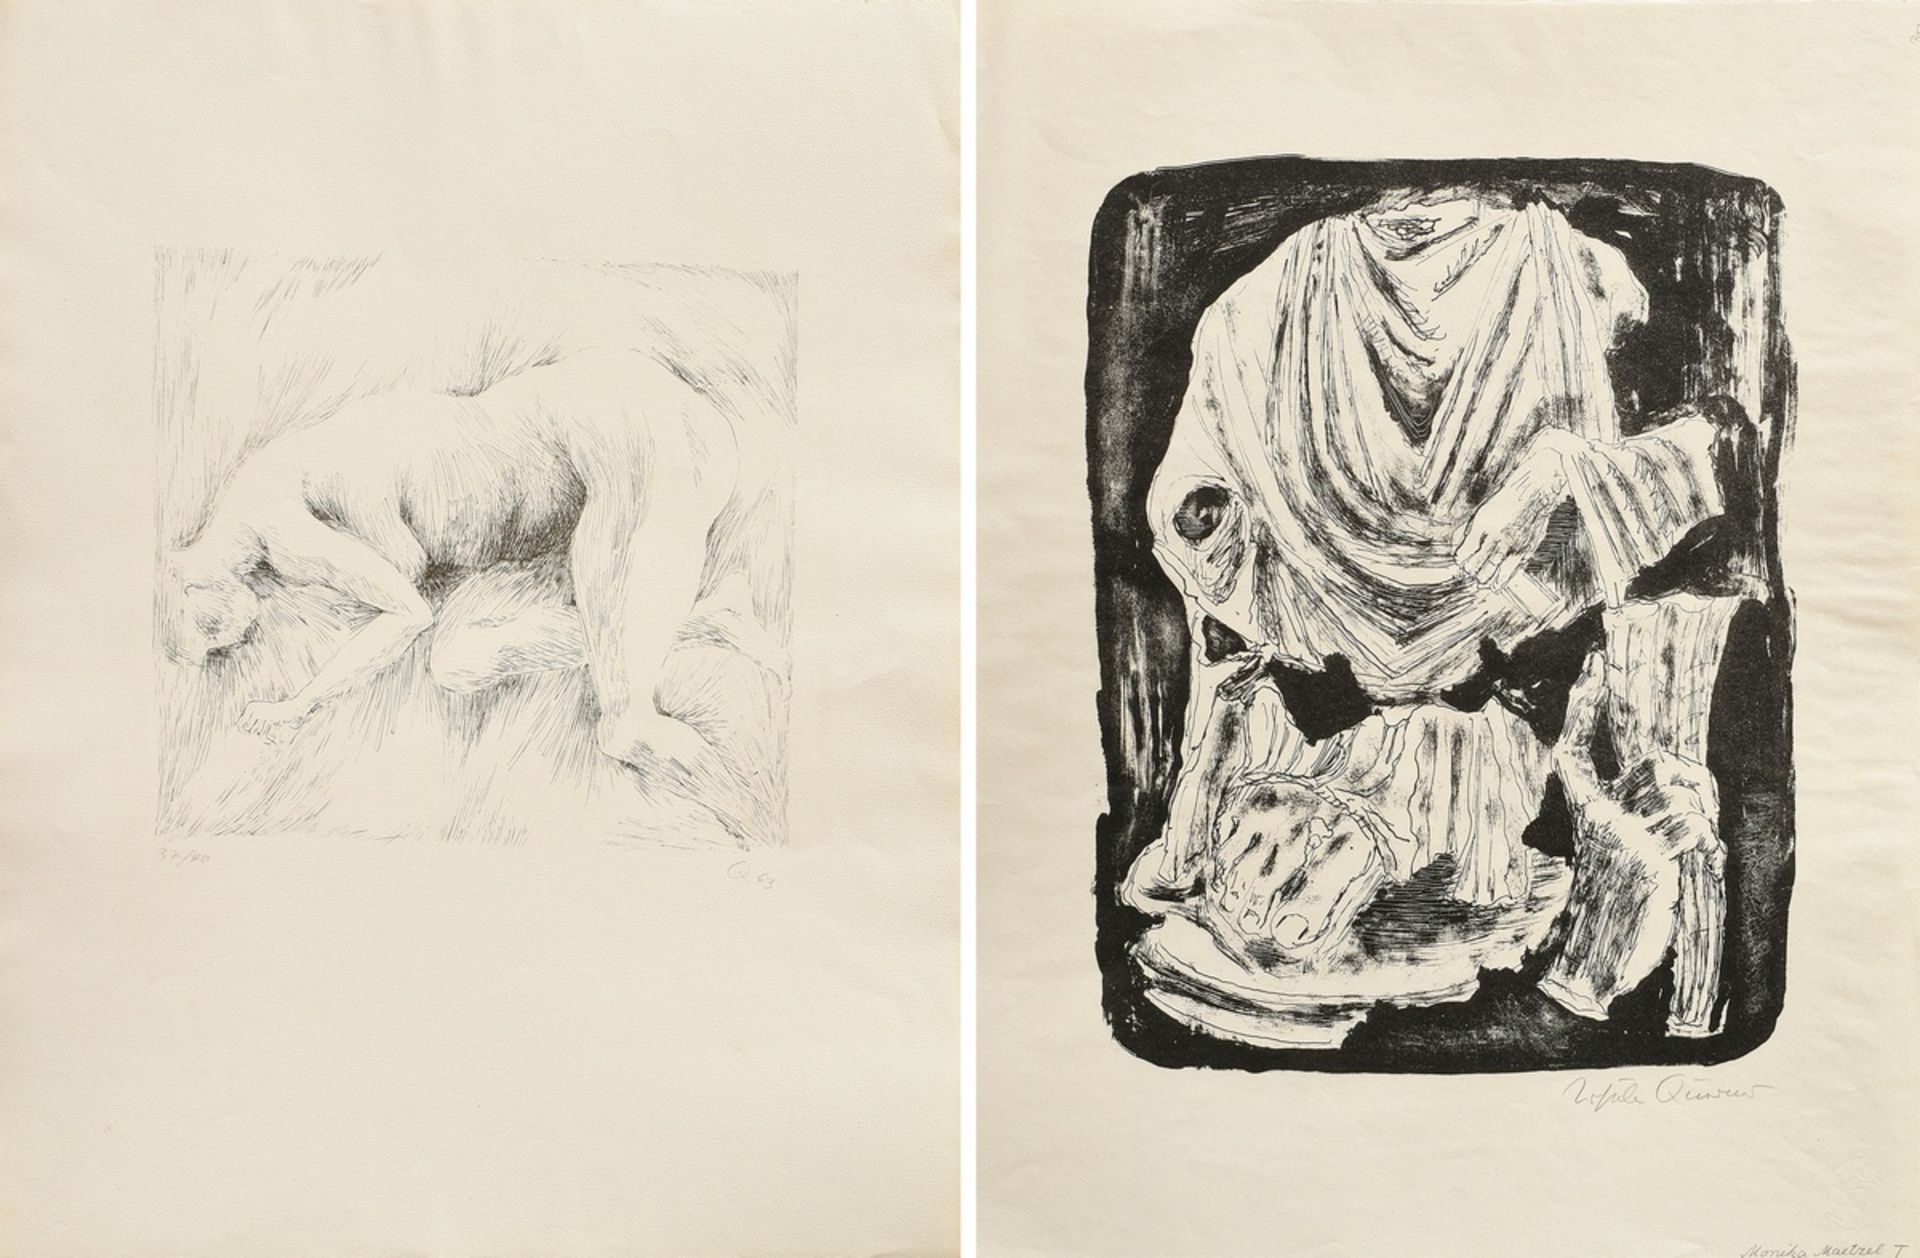 2 Querner, Ursula (1921-1969) "Fragmente einer römischen Statue" und "Liegender Akt" 1963, Lithogra